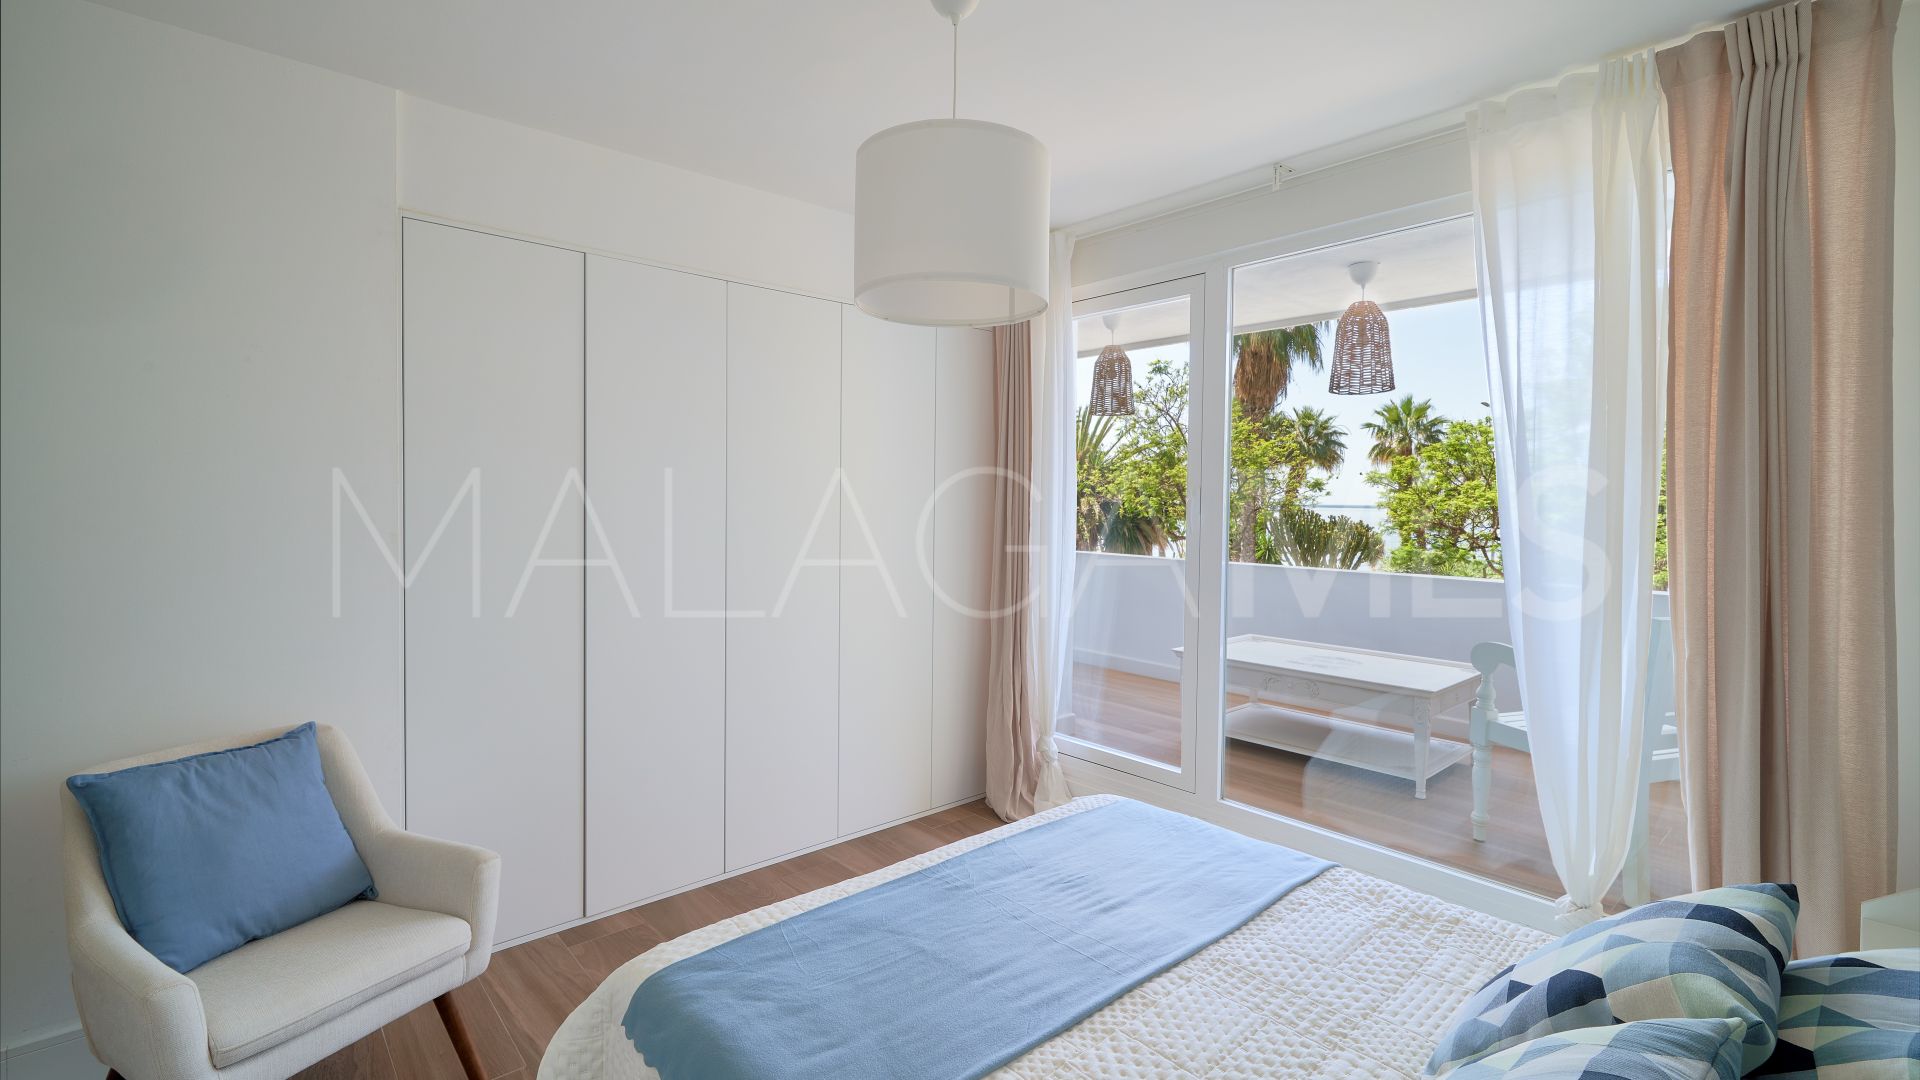 Malaga apartment for sale